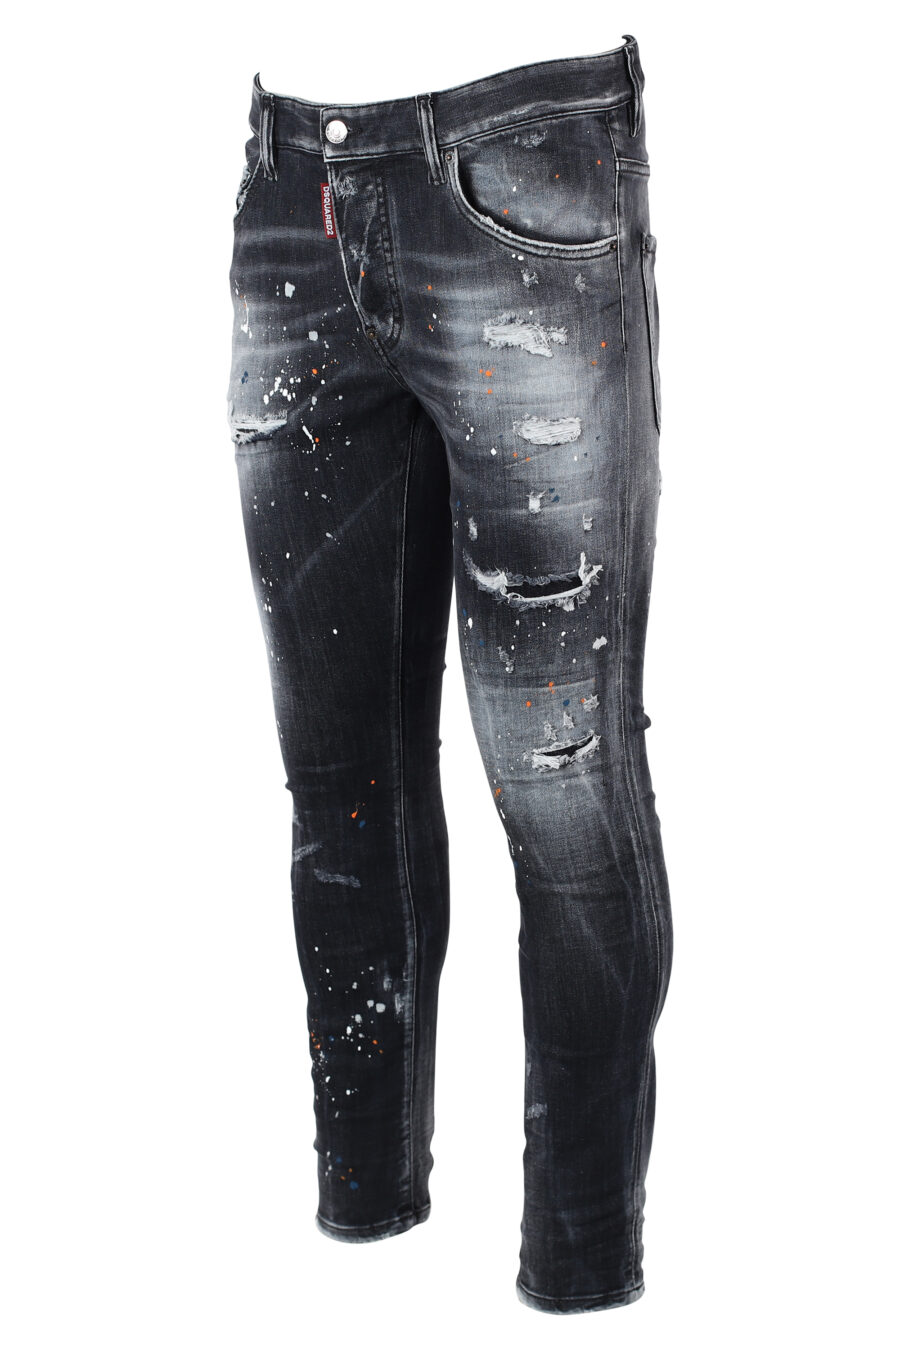 Pantalón vaquero negro "super twinky jean" desgastado y rotos - IMG 9890